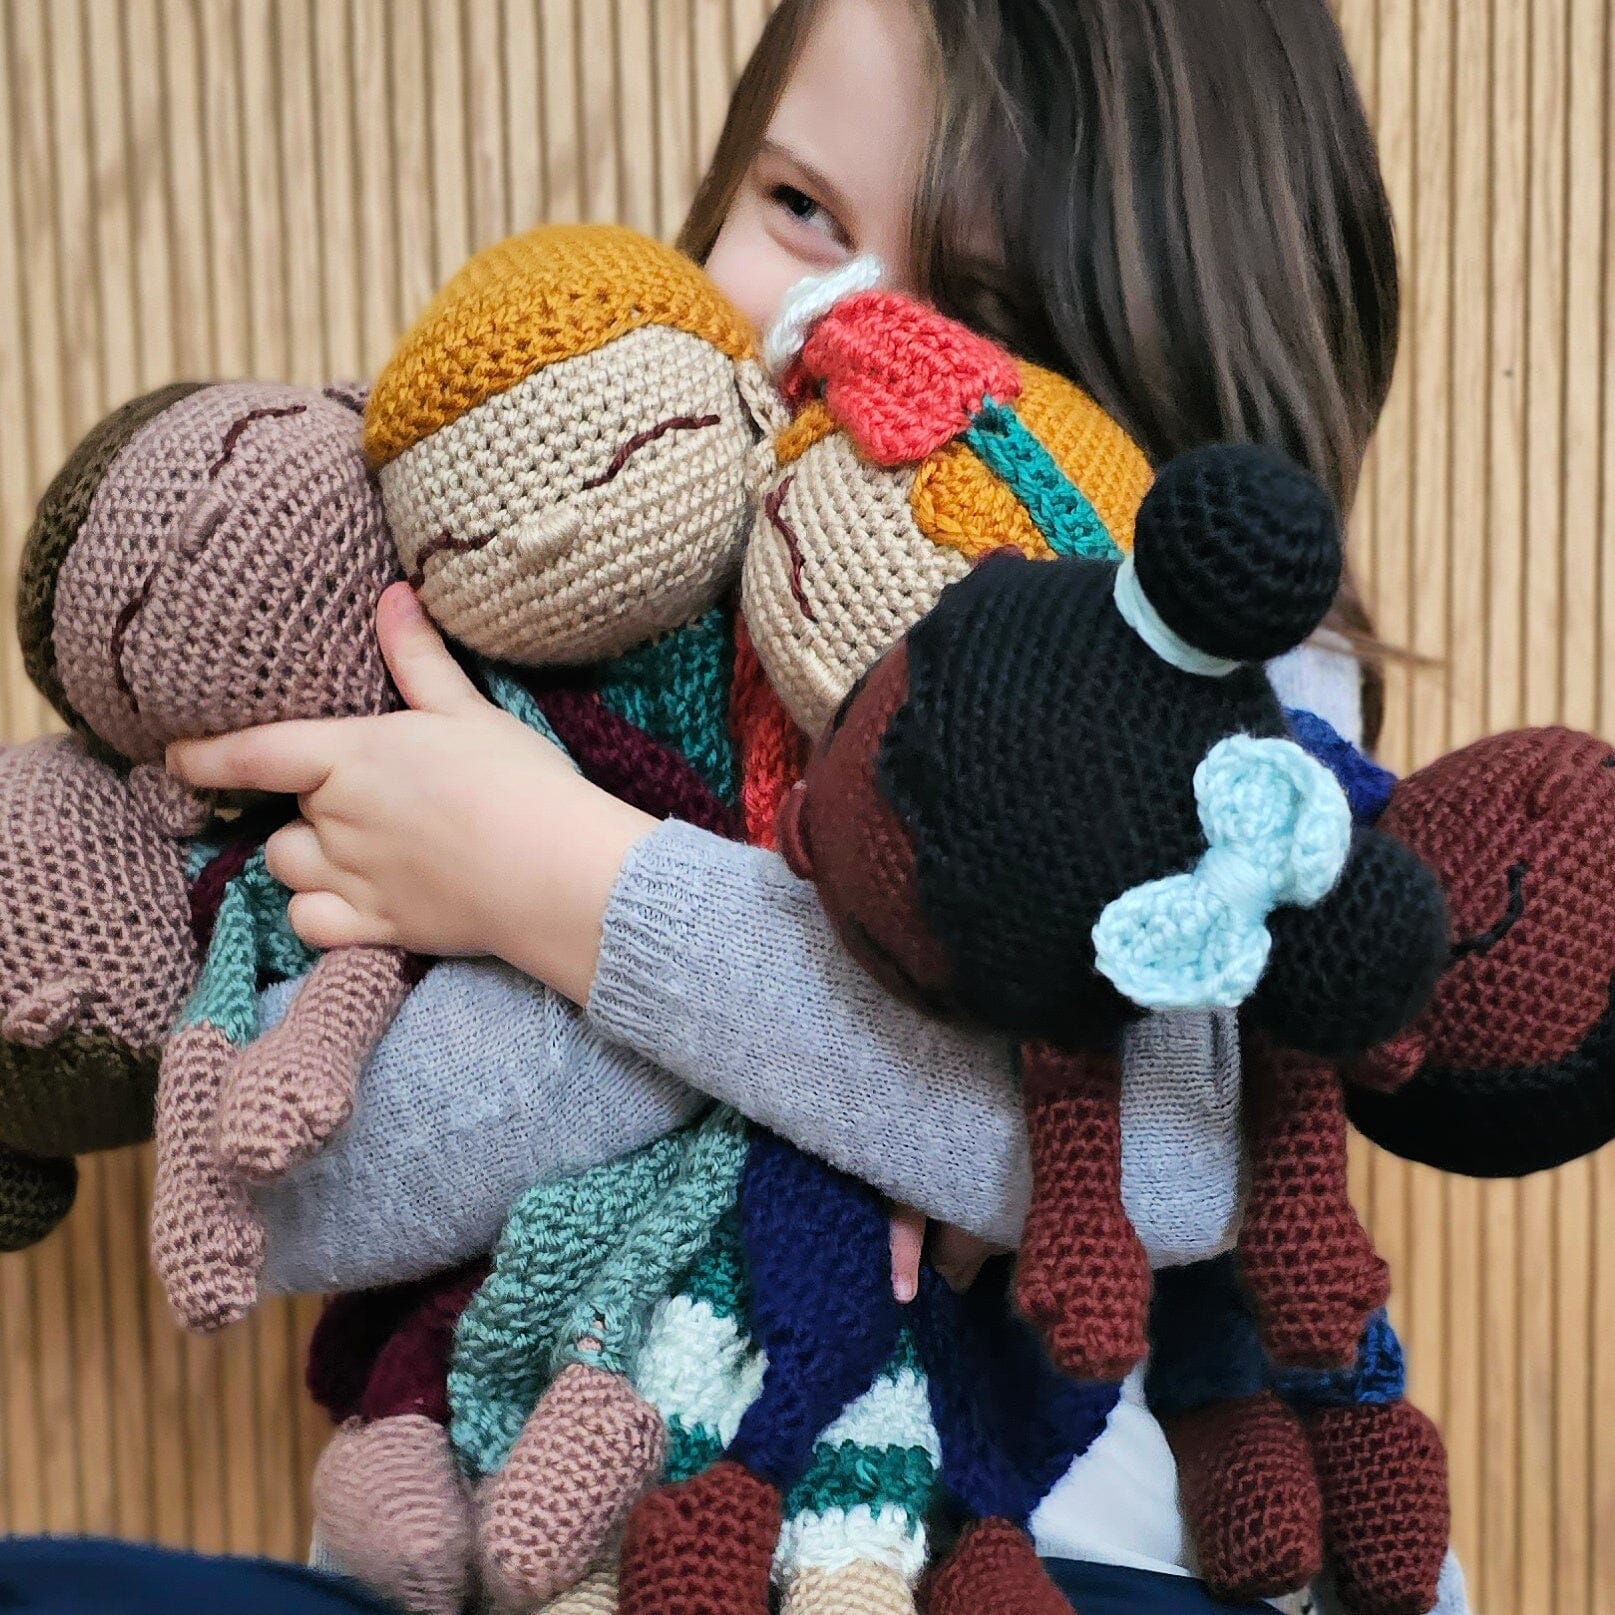 Crochet – FurlsCrochet